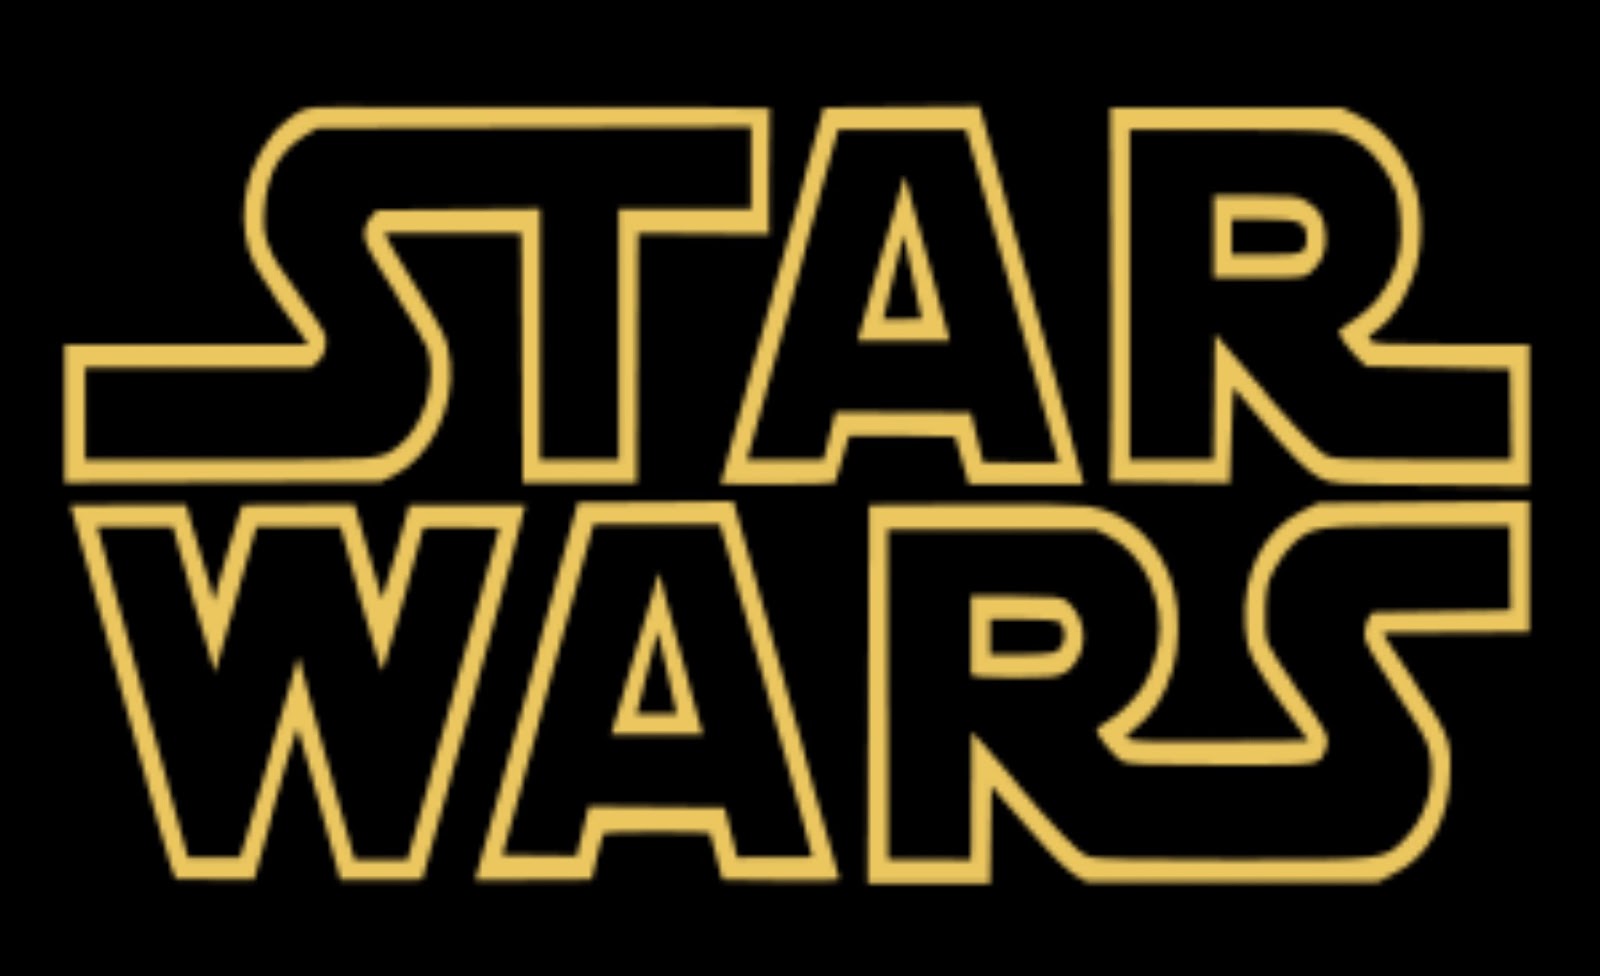 Star Movies Logo